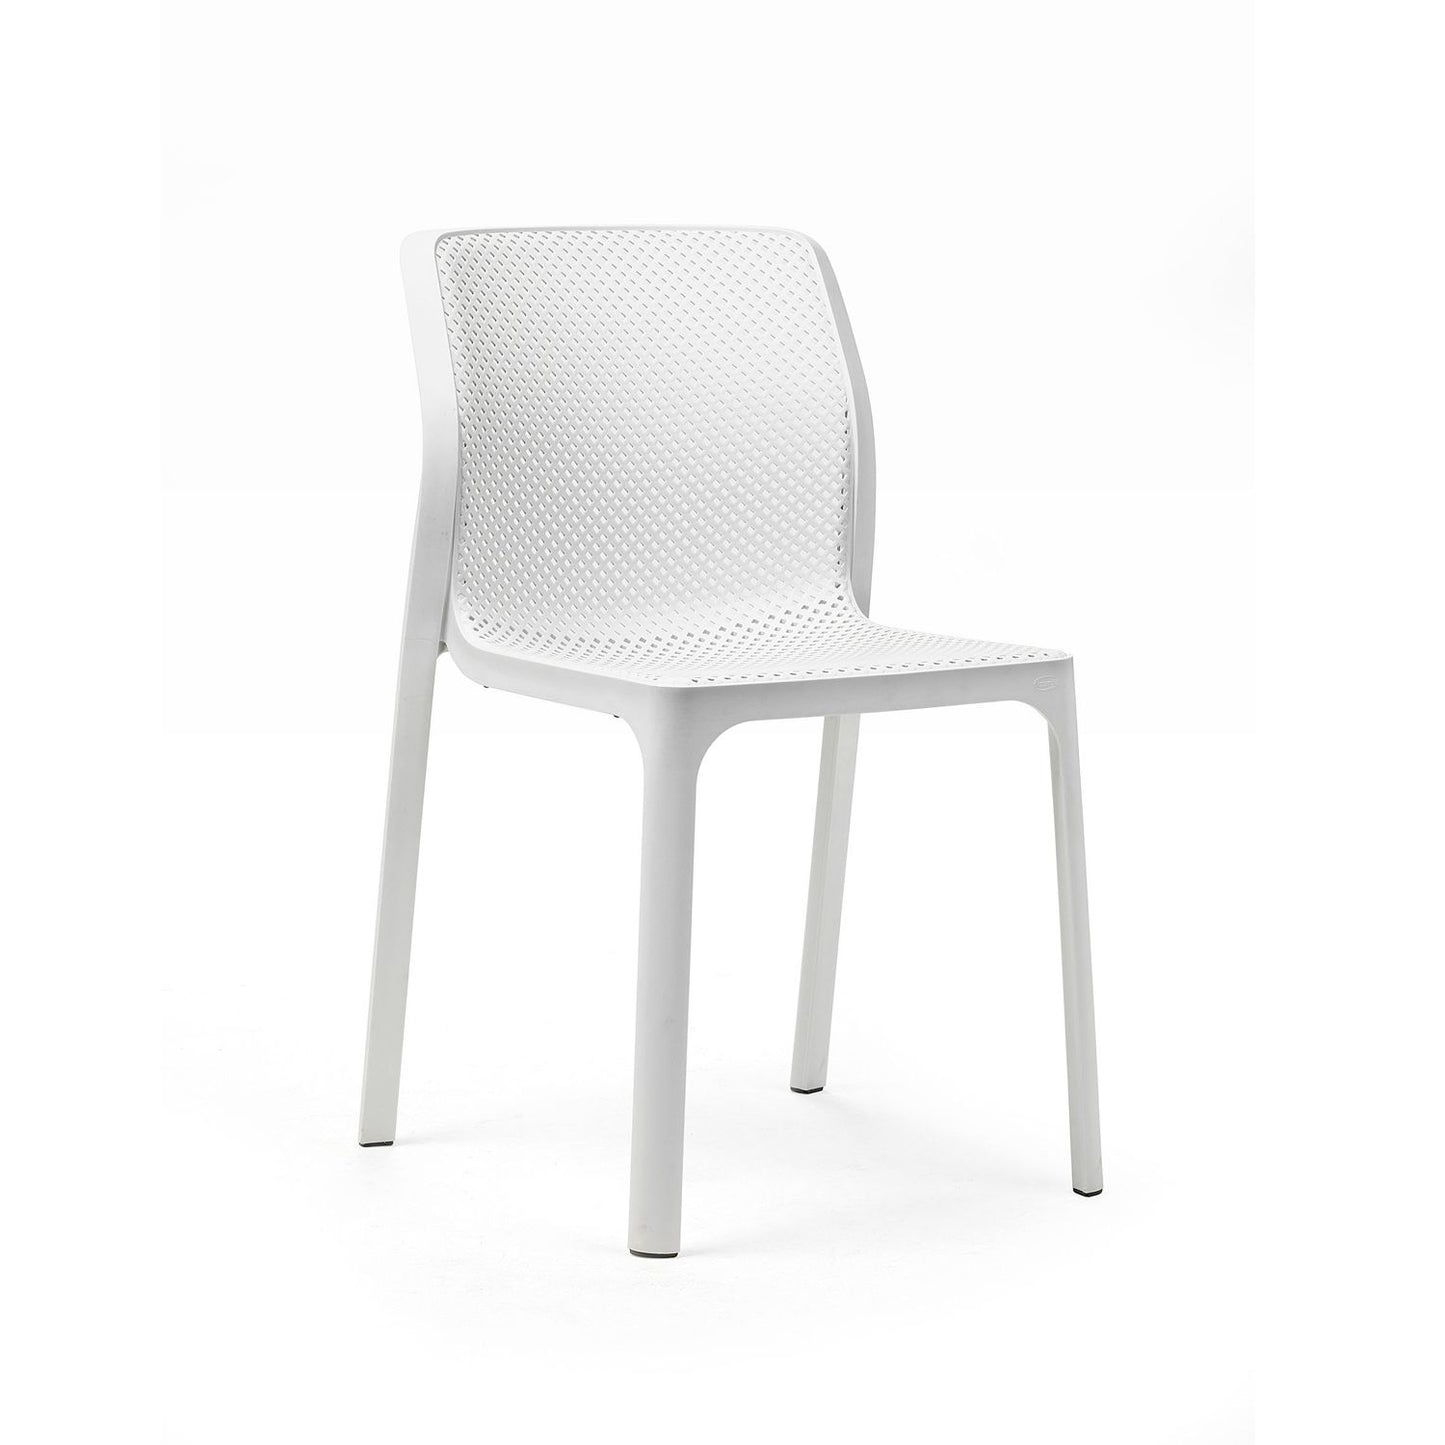 Bit Chair By Nardi - White